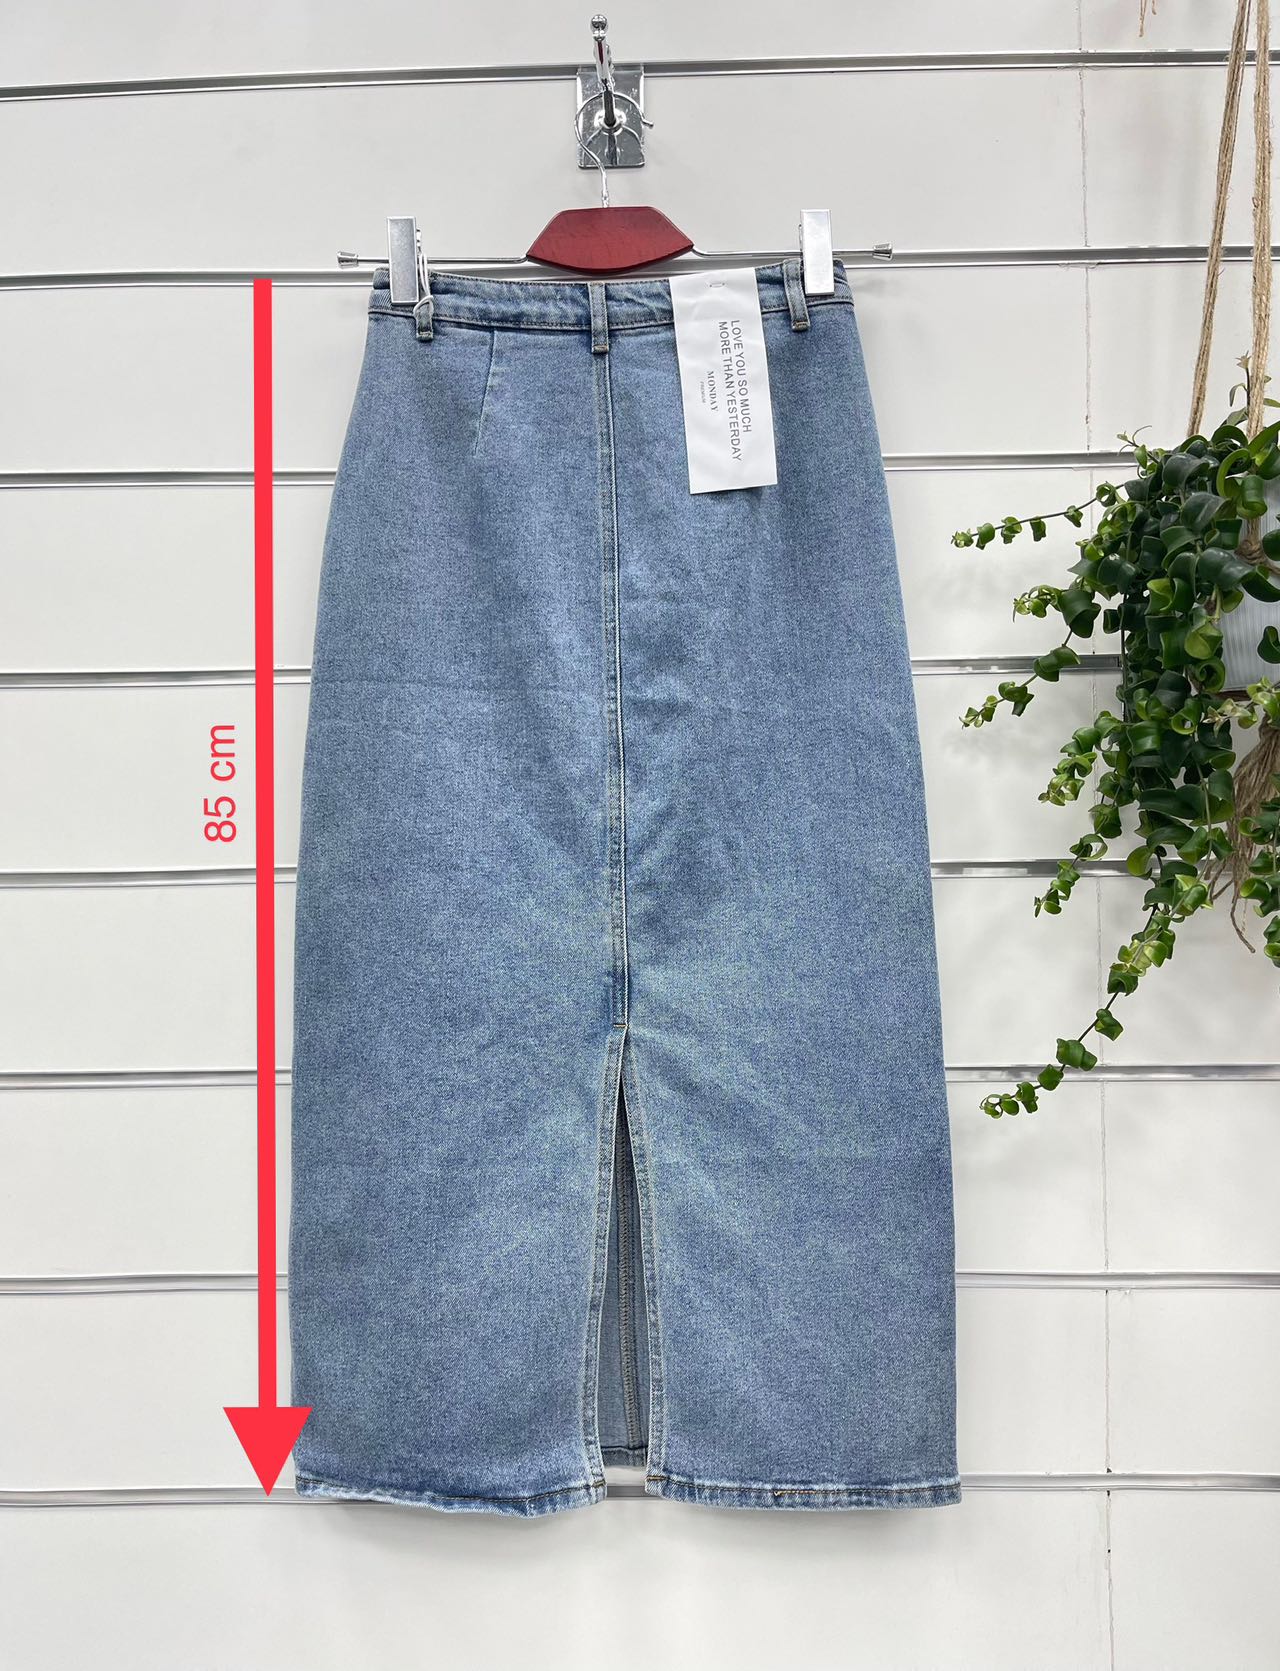 Spódnica  damskie jeans Roz 34-42.  1 kolor . Paczka 10szt